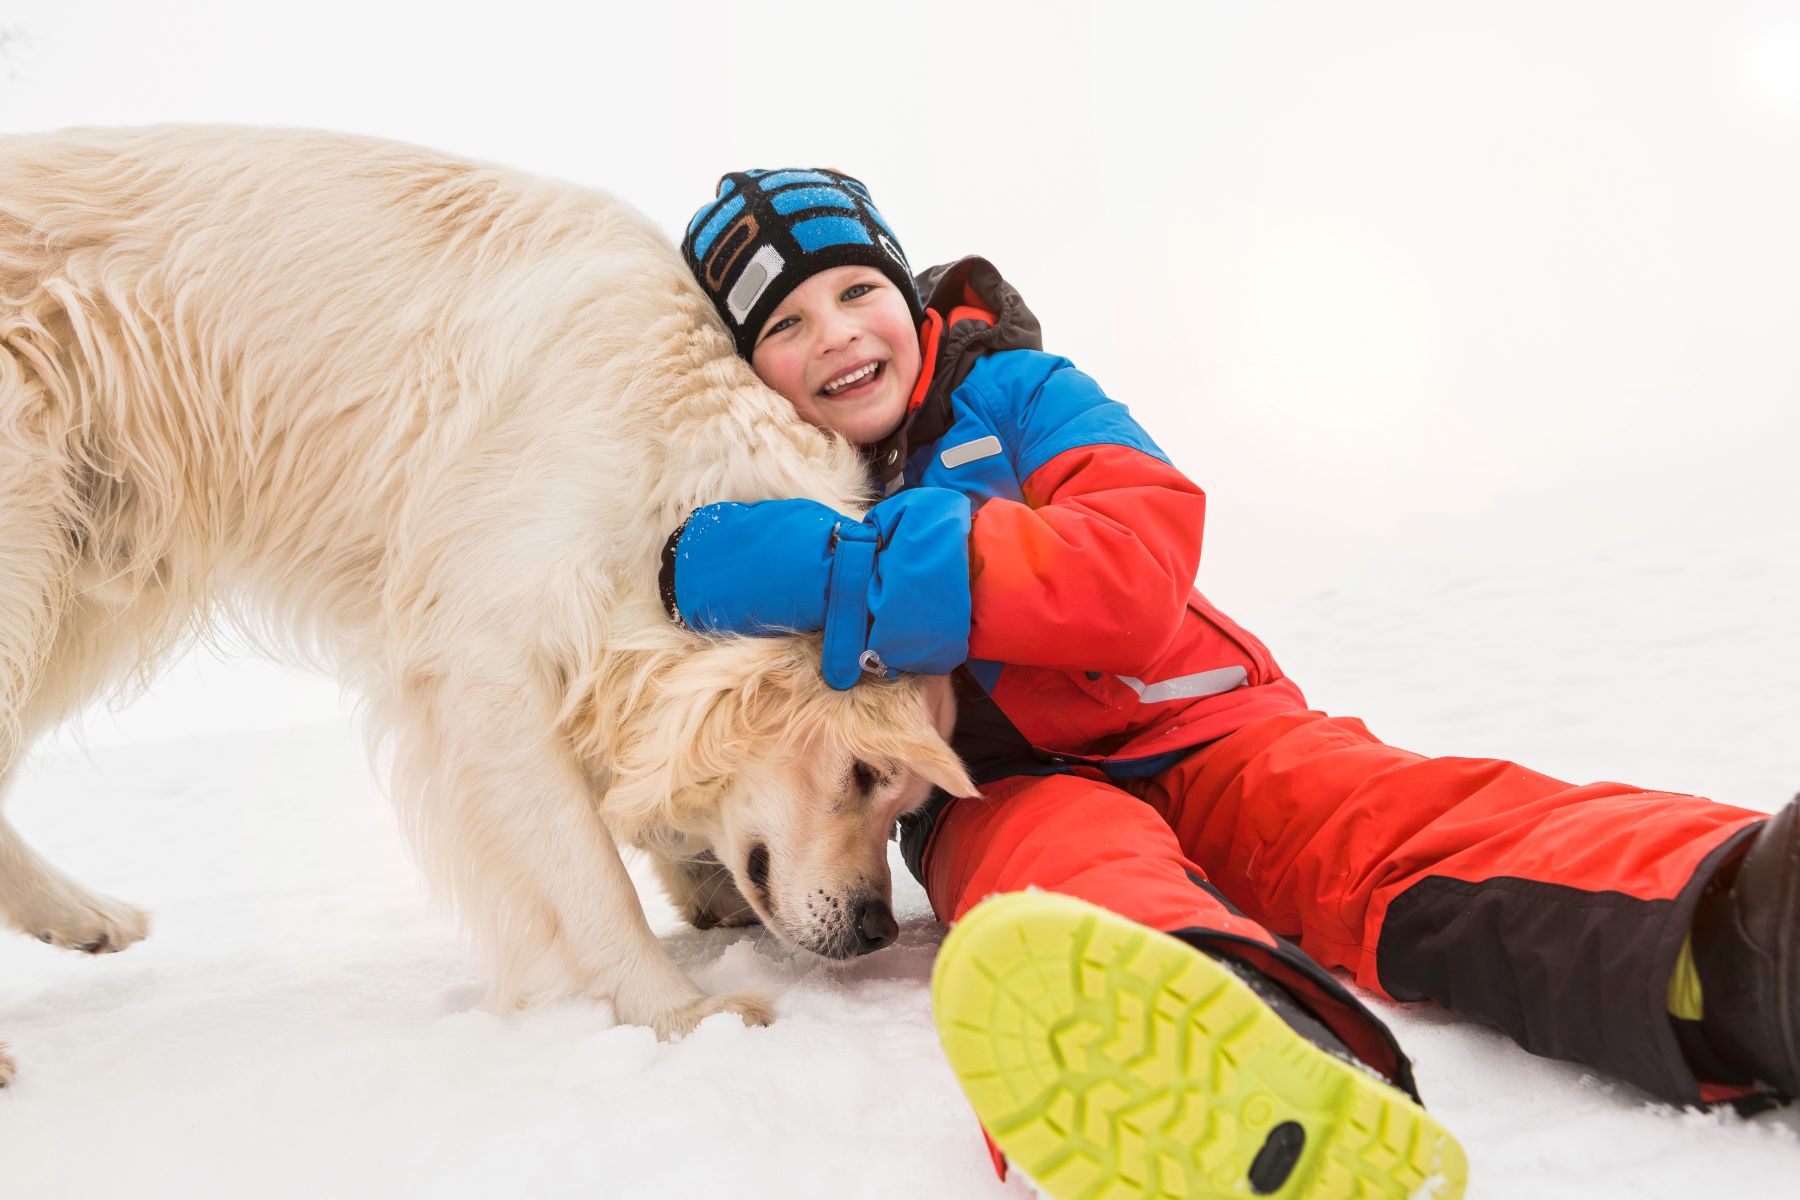 Kombinezony zimowe dla dzieci - sprawdź, jak wybrać odpowiedni model dla swojej pociechy!